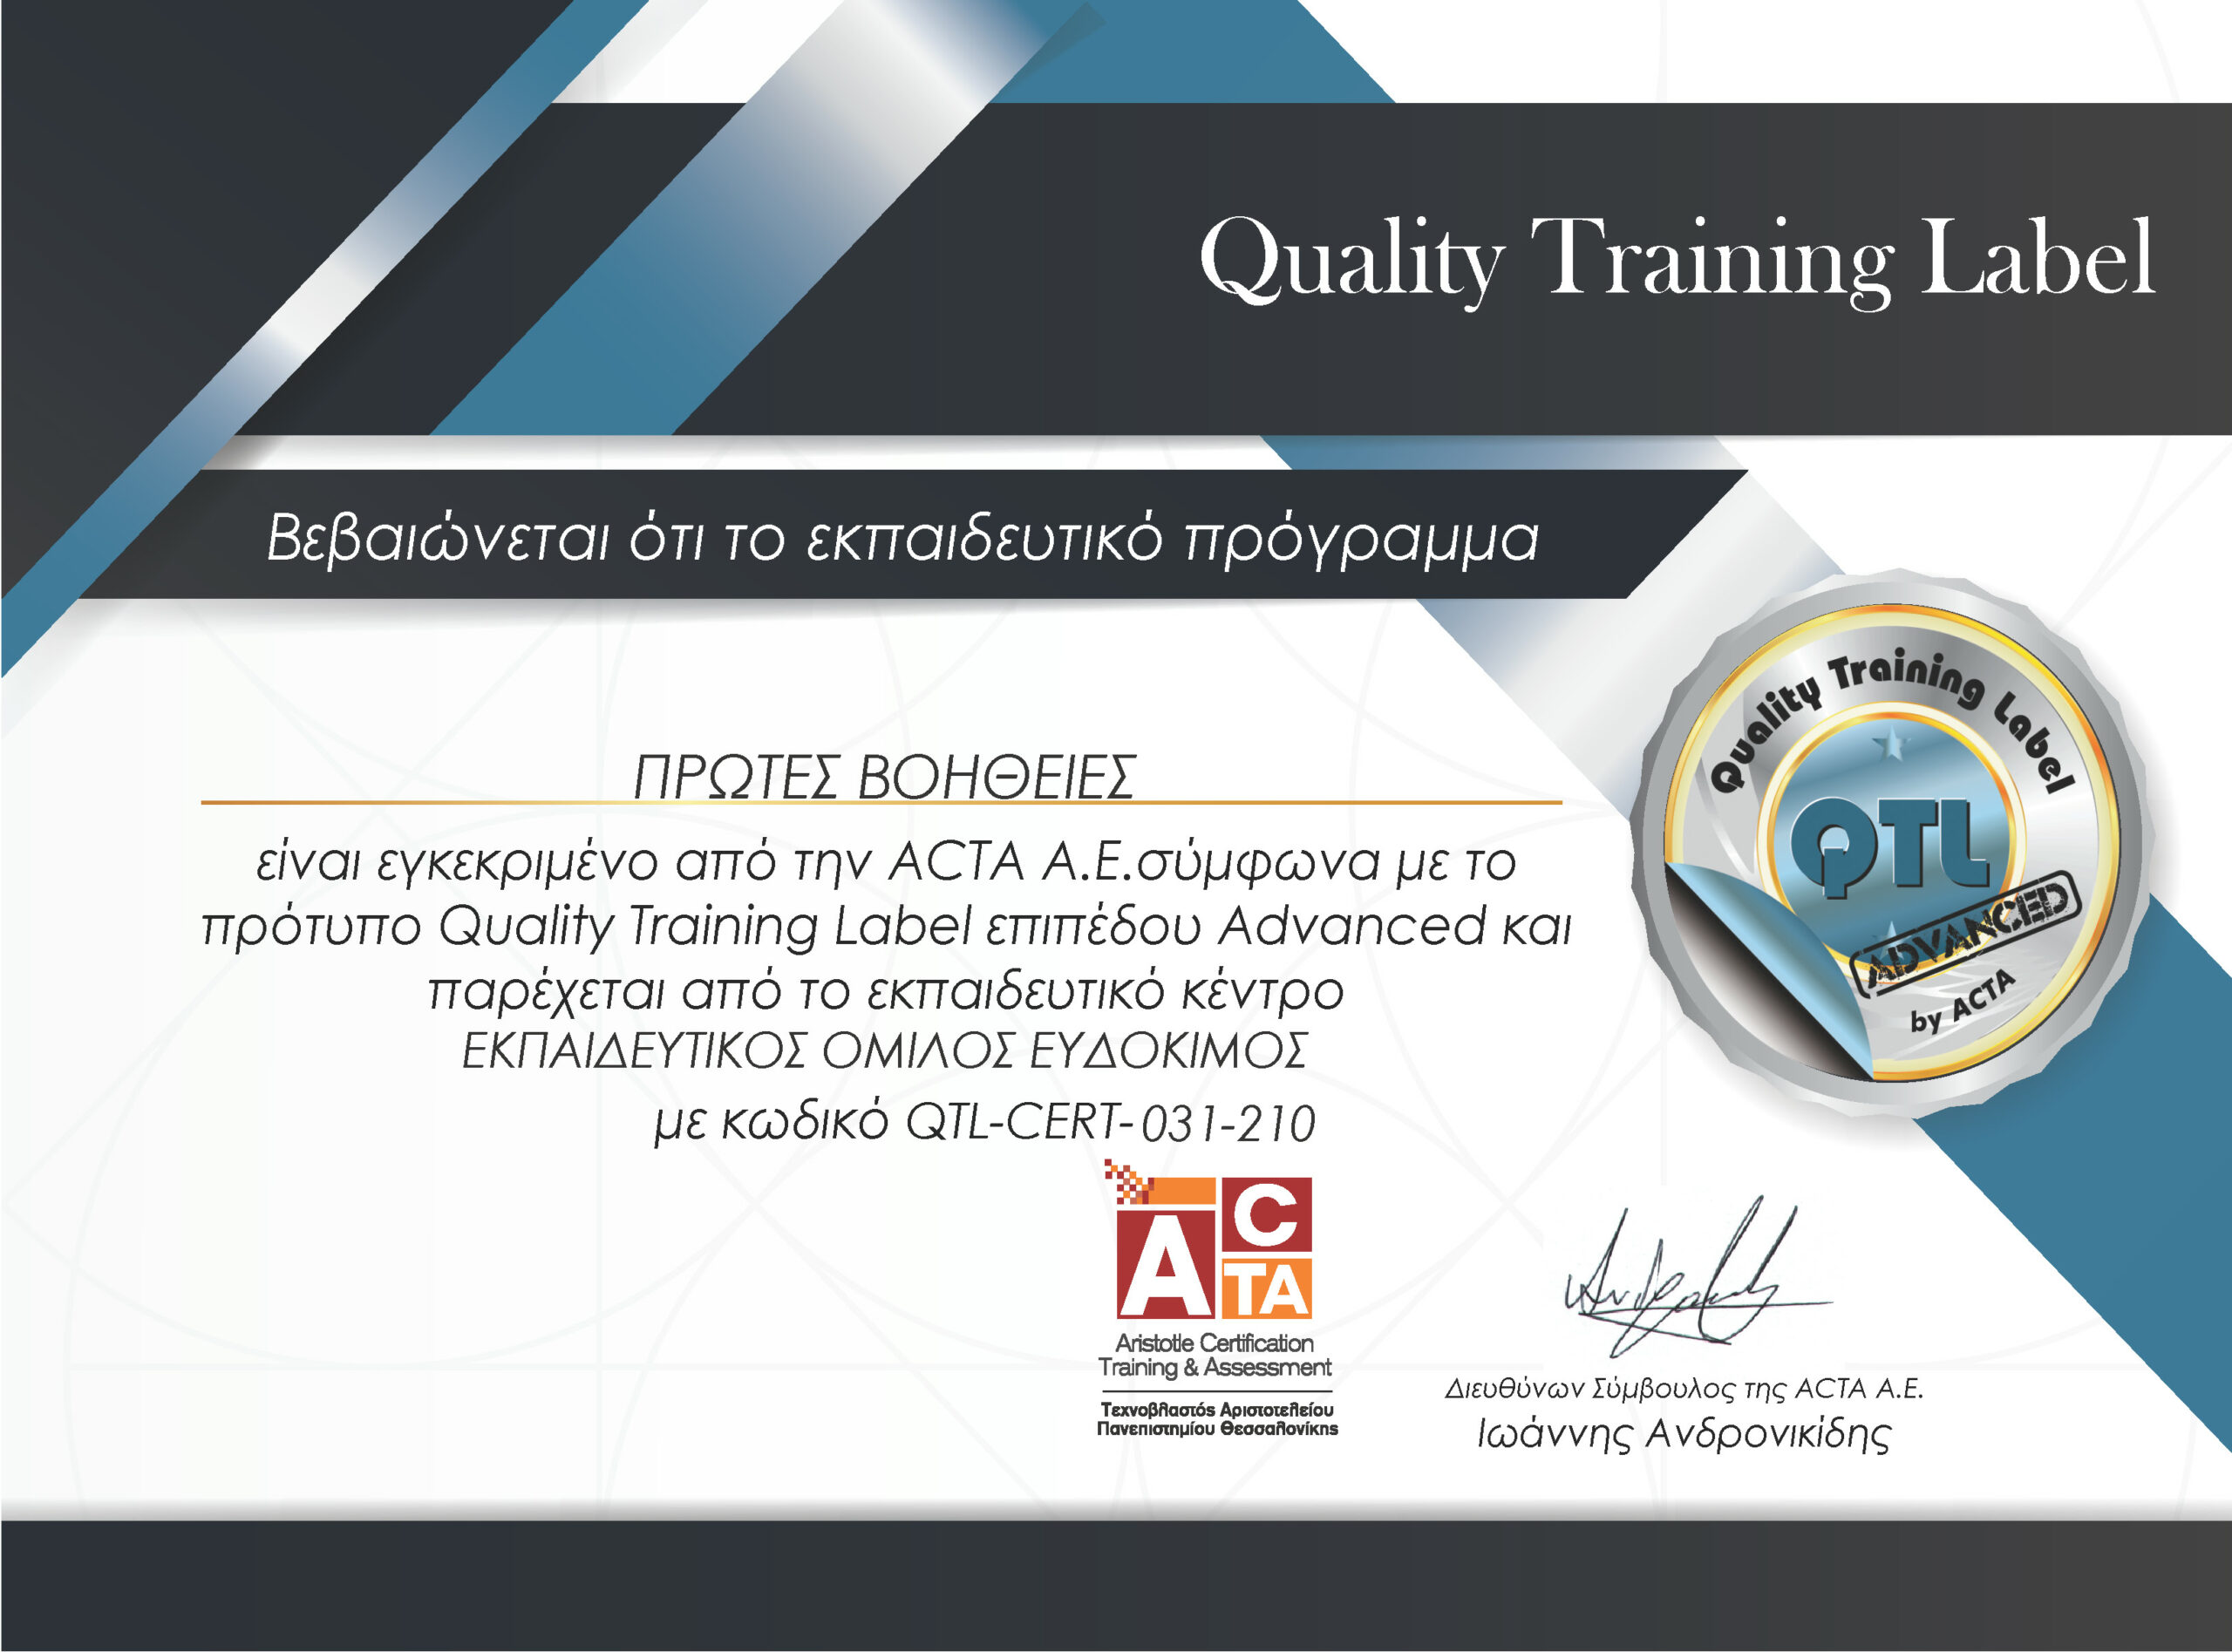 Πρώτες βοήθειες - Πιστοποιημένο εκπαιδευτικό πρόγραμμα της ACTA σύμφωνα με το πρότυπο QTL επιπέδου Advanced